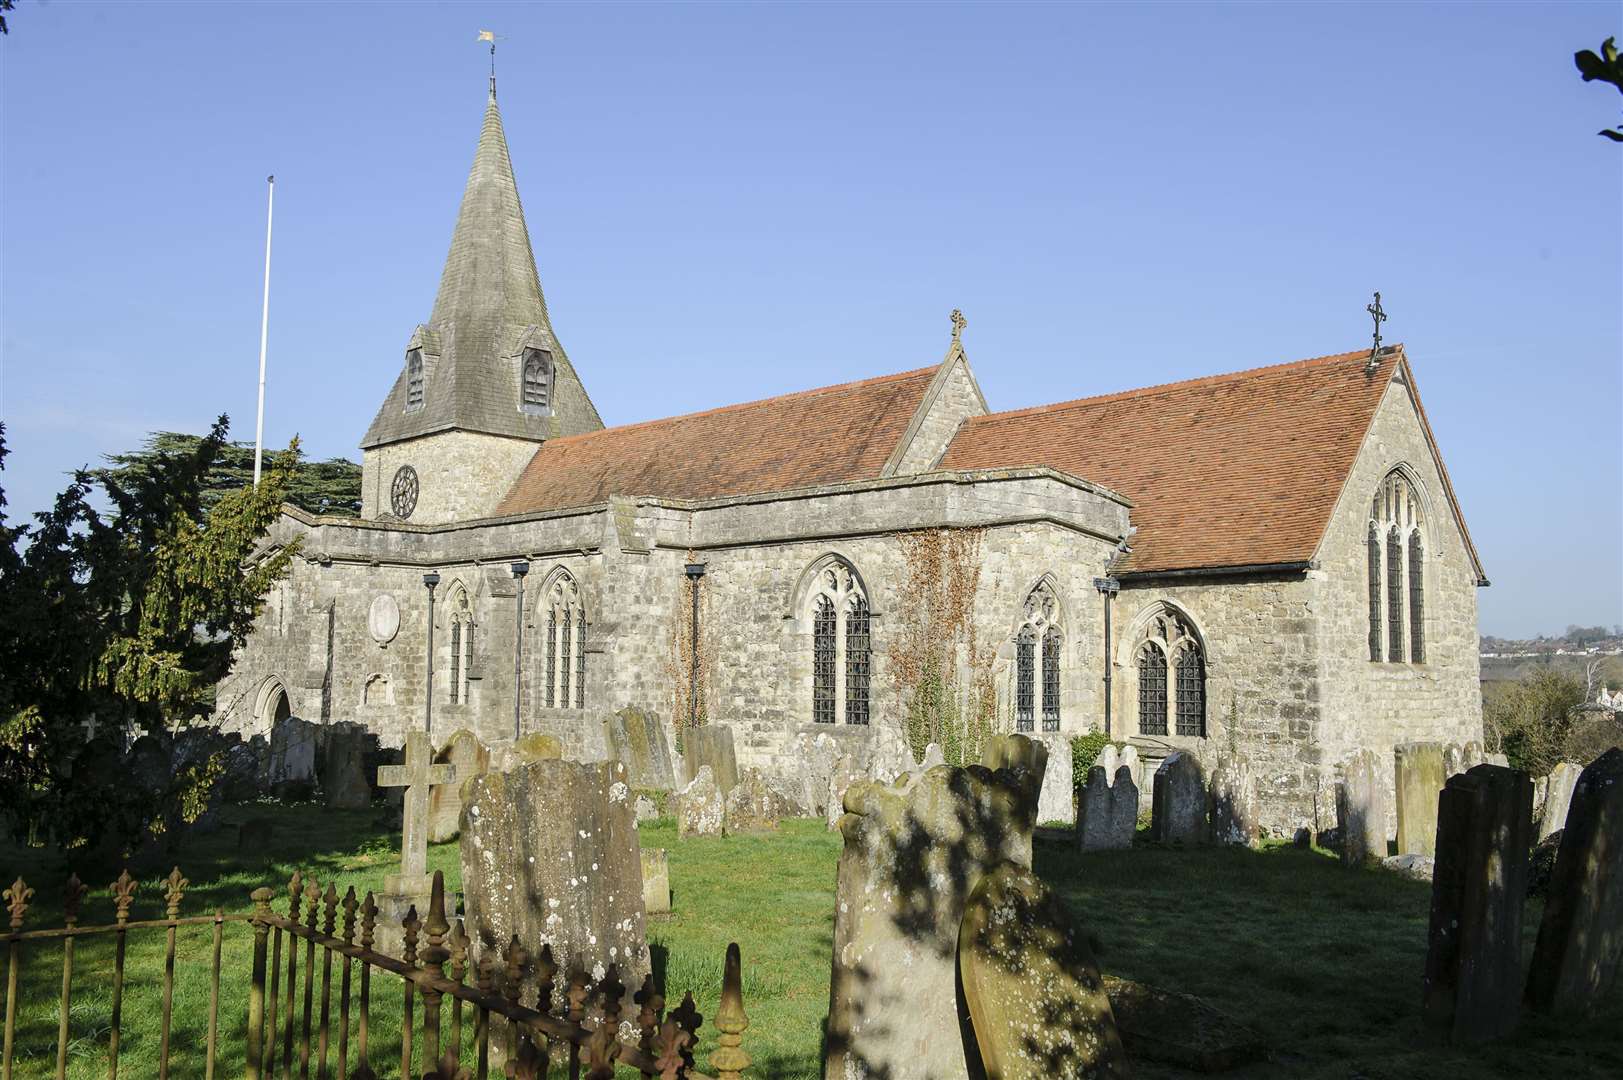 St Mary's Church, East Farleigh